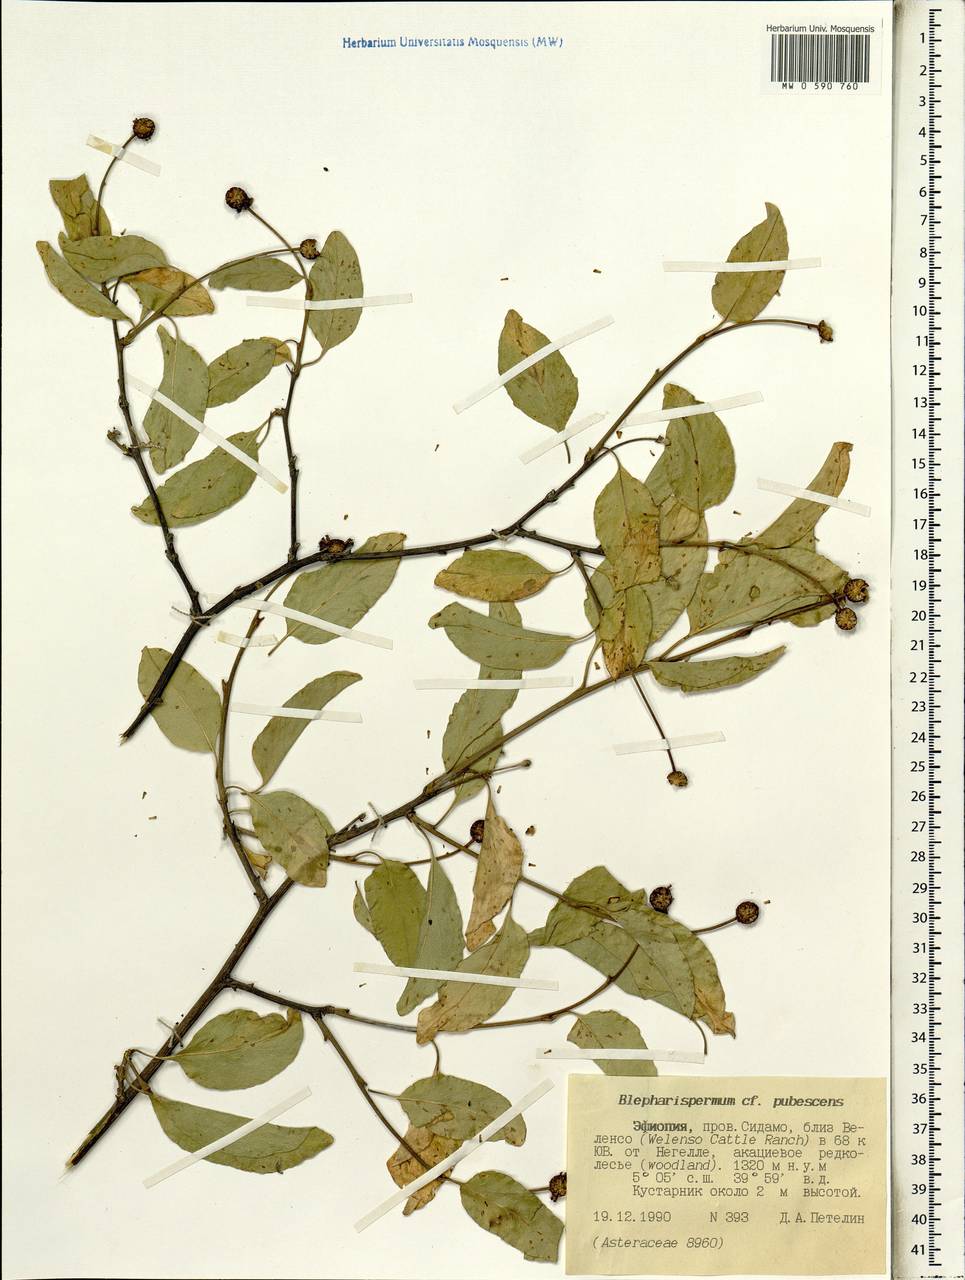 Blepharispermum pubescens S.Moore, Africa (AFR) (Ethiopia)